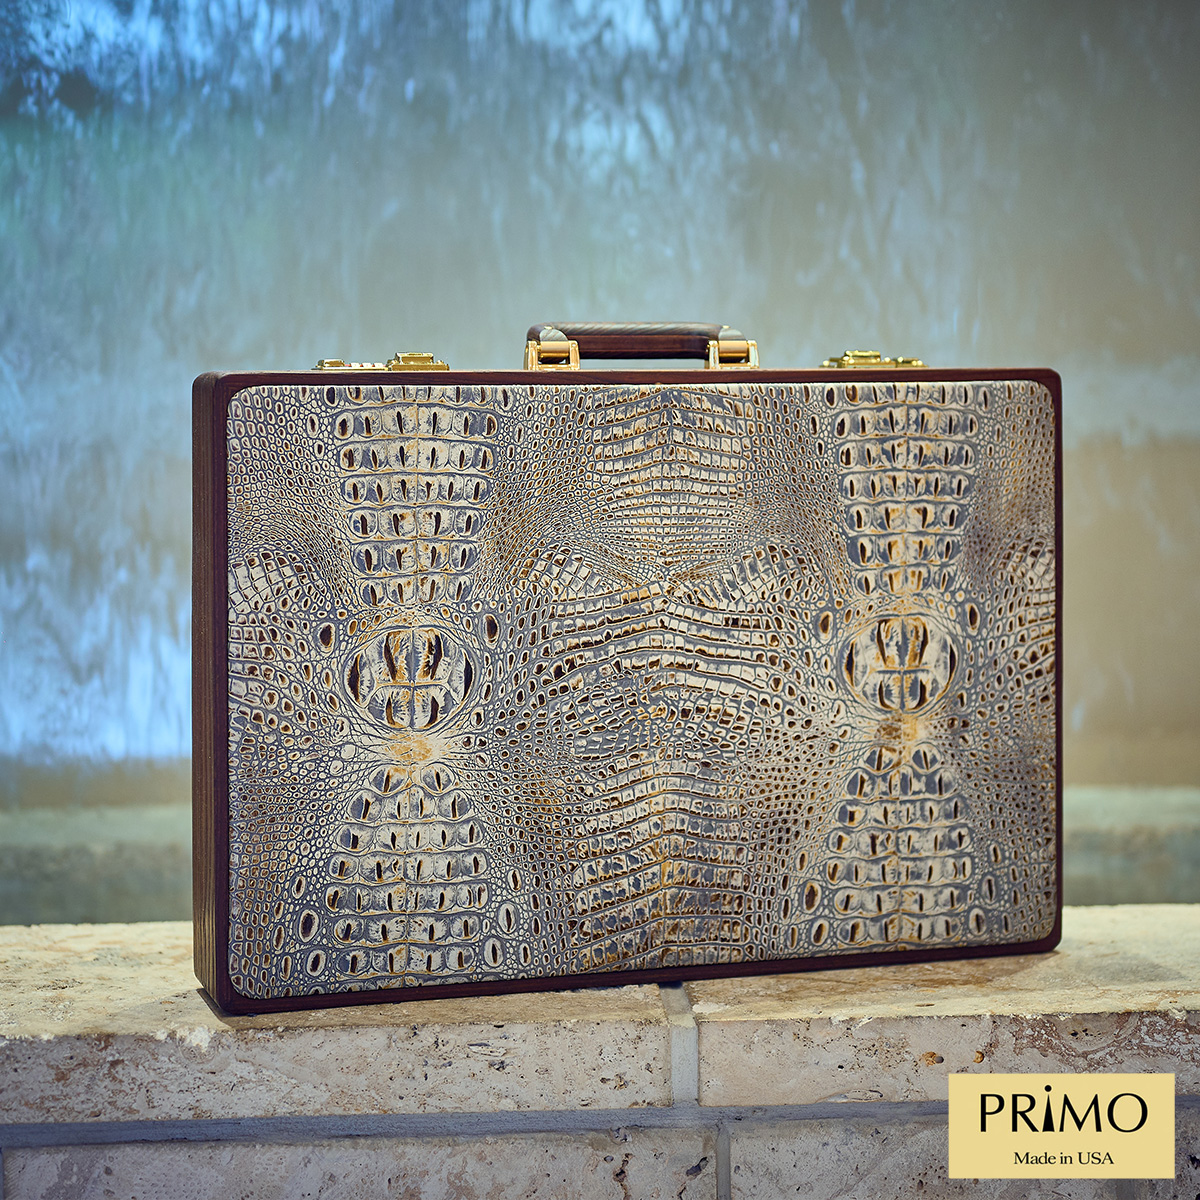 PRIMO "Croco" Luxury Backgammon Board Set "Master" Mod - (22 1/4" Croco Style Genuine Leather Cover)